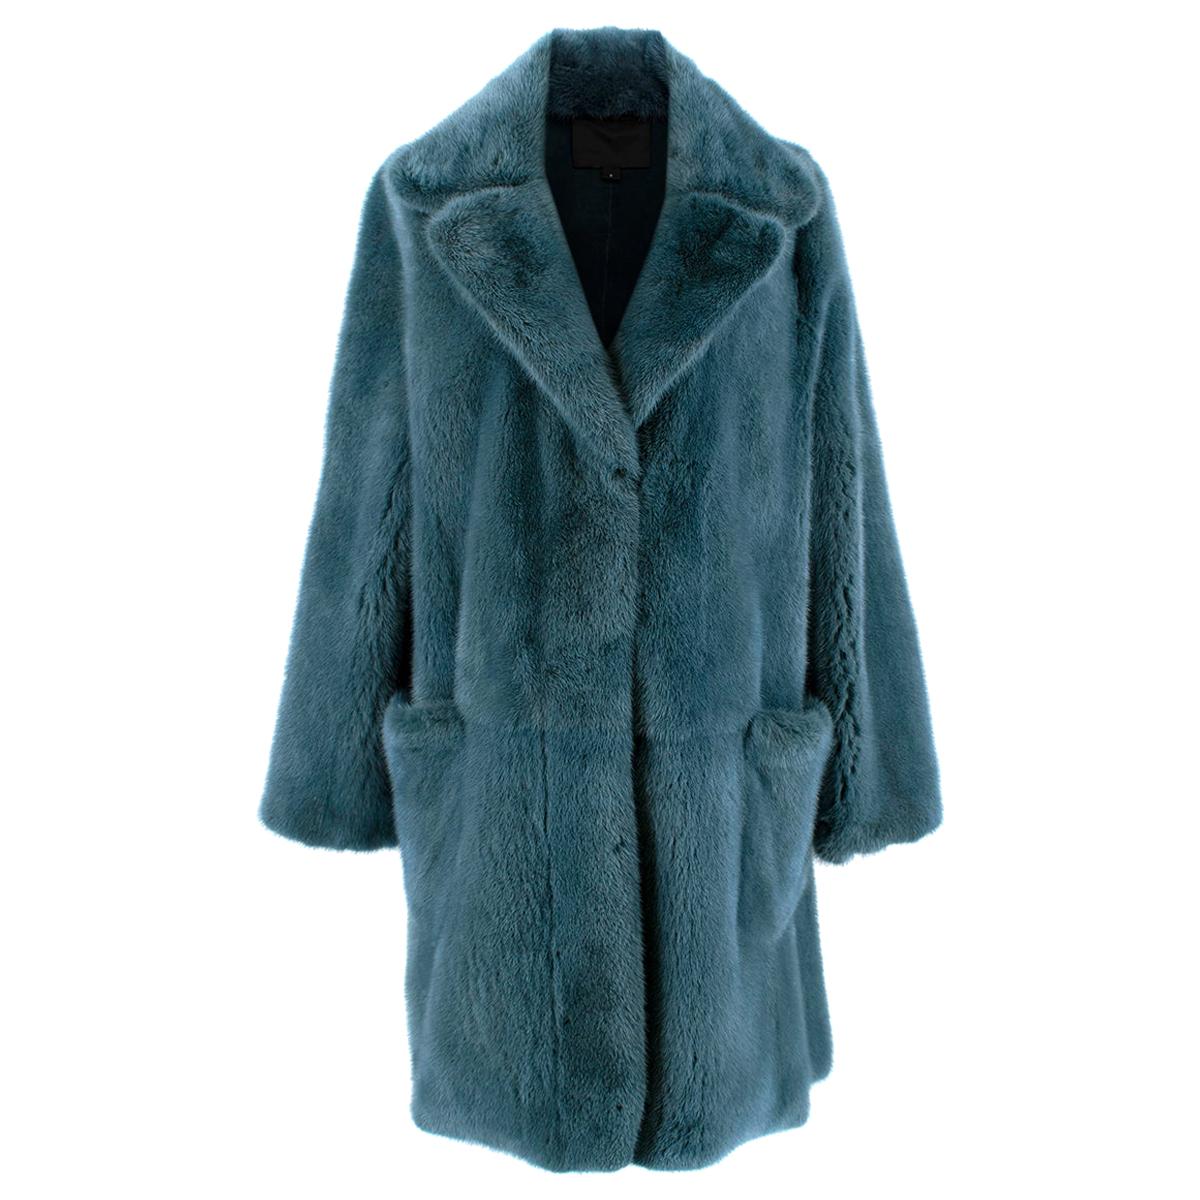 Marc Jacobs Blue Mink Fur Coat - Size 6/S For Sale